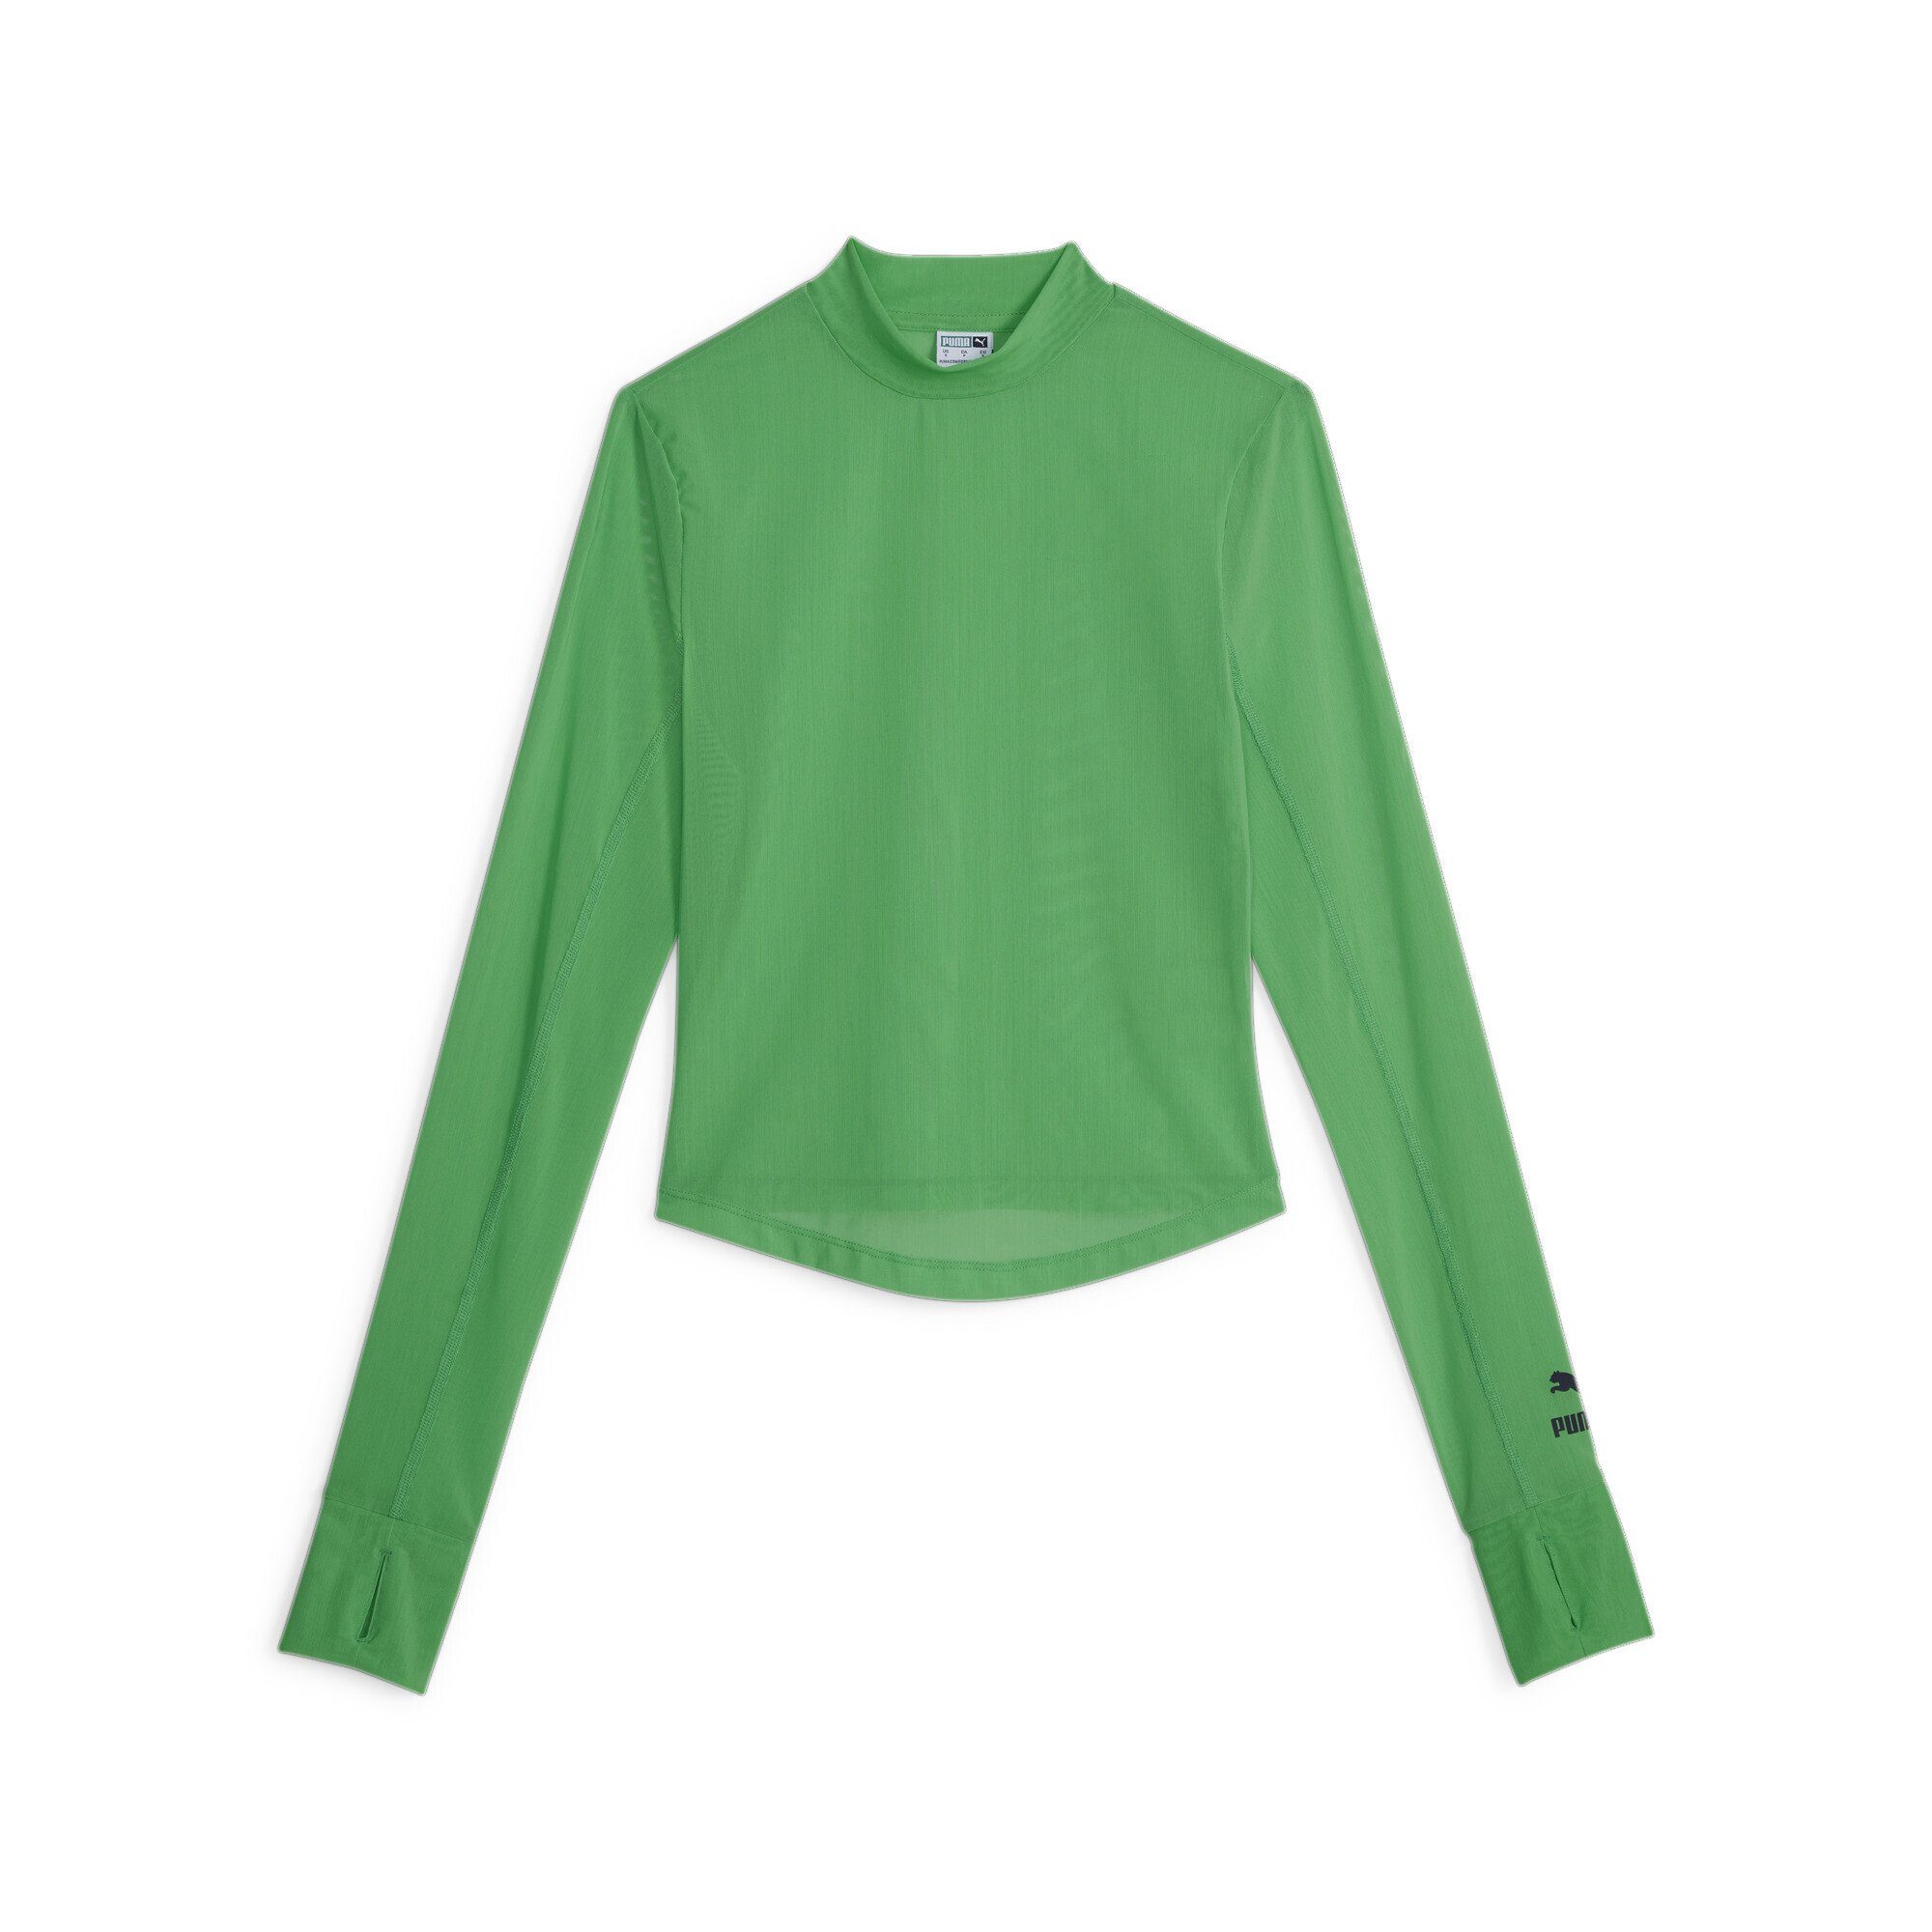 PUMA T-Shirt DARE TO Green Damen Langarmshirt